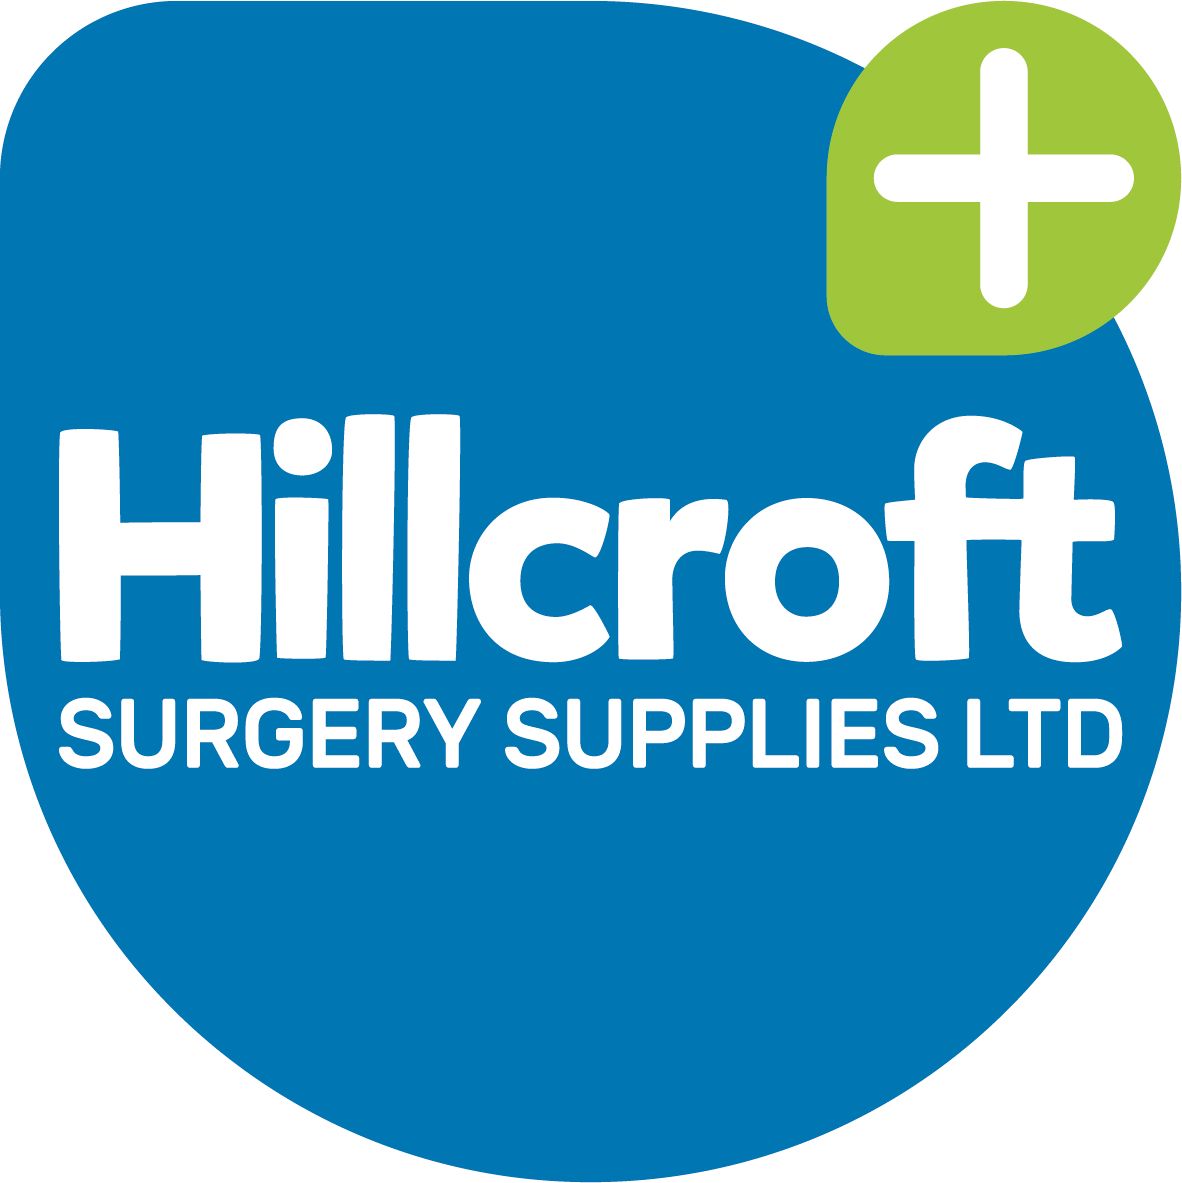 Hillcroft Surgery Supplies